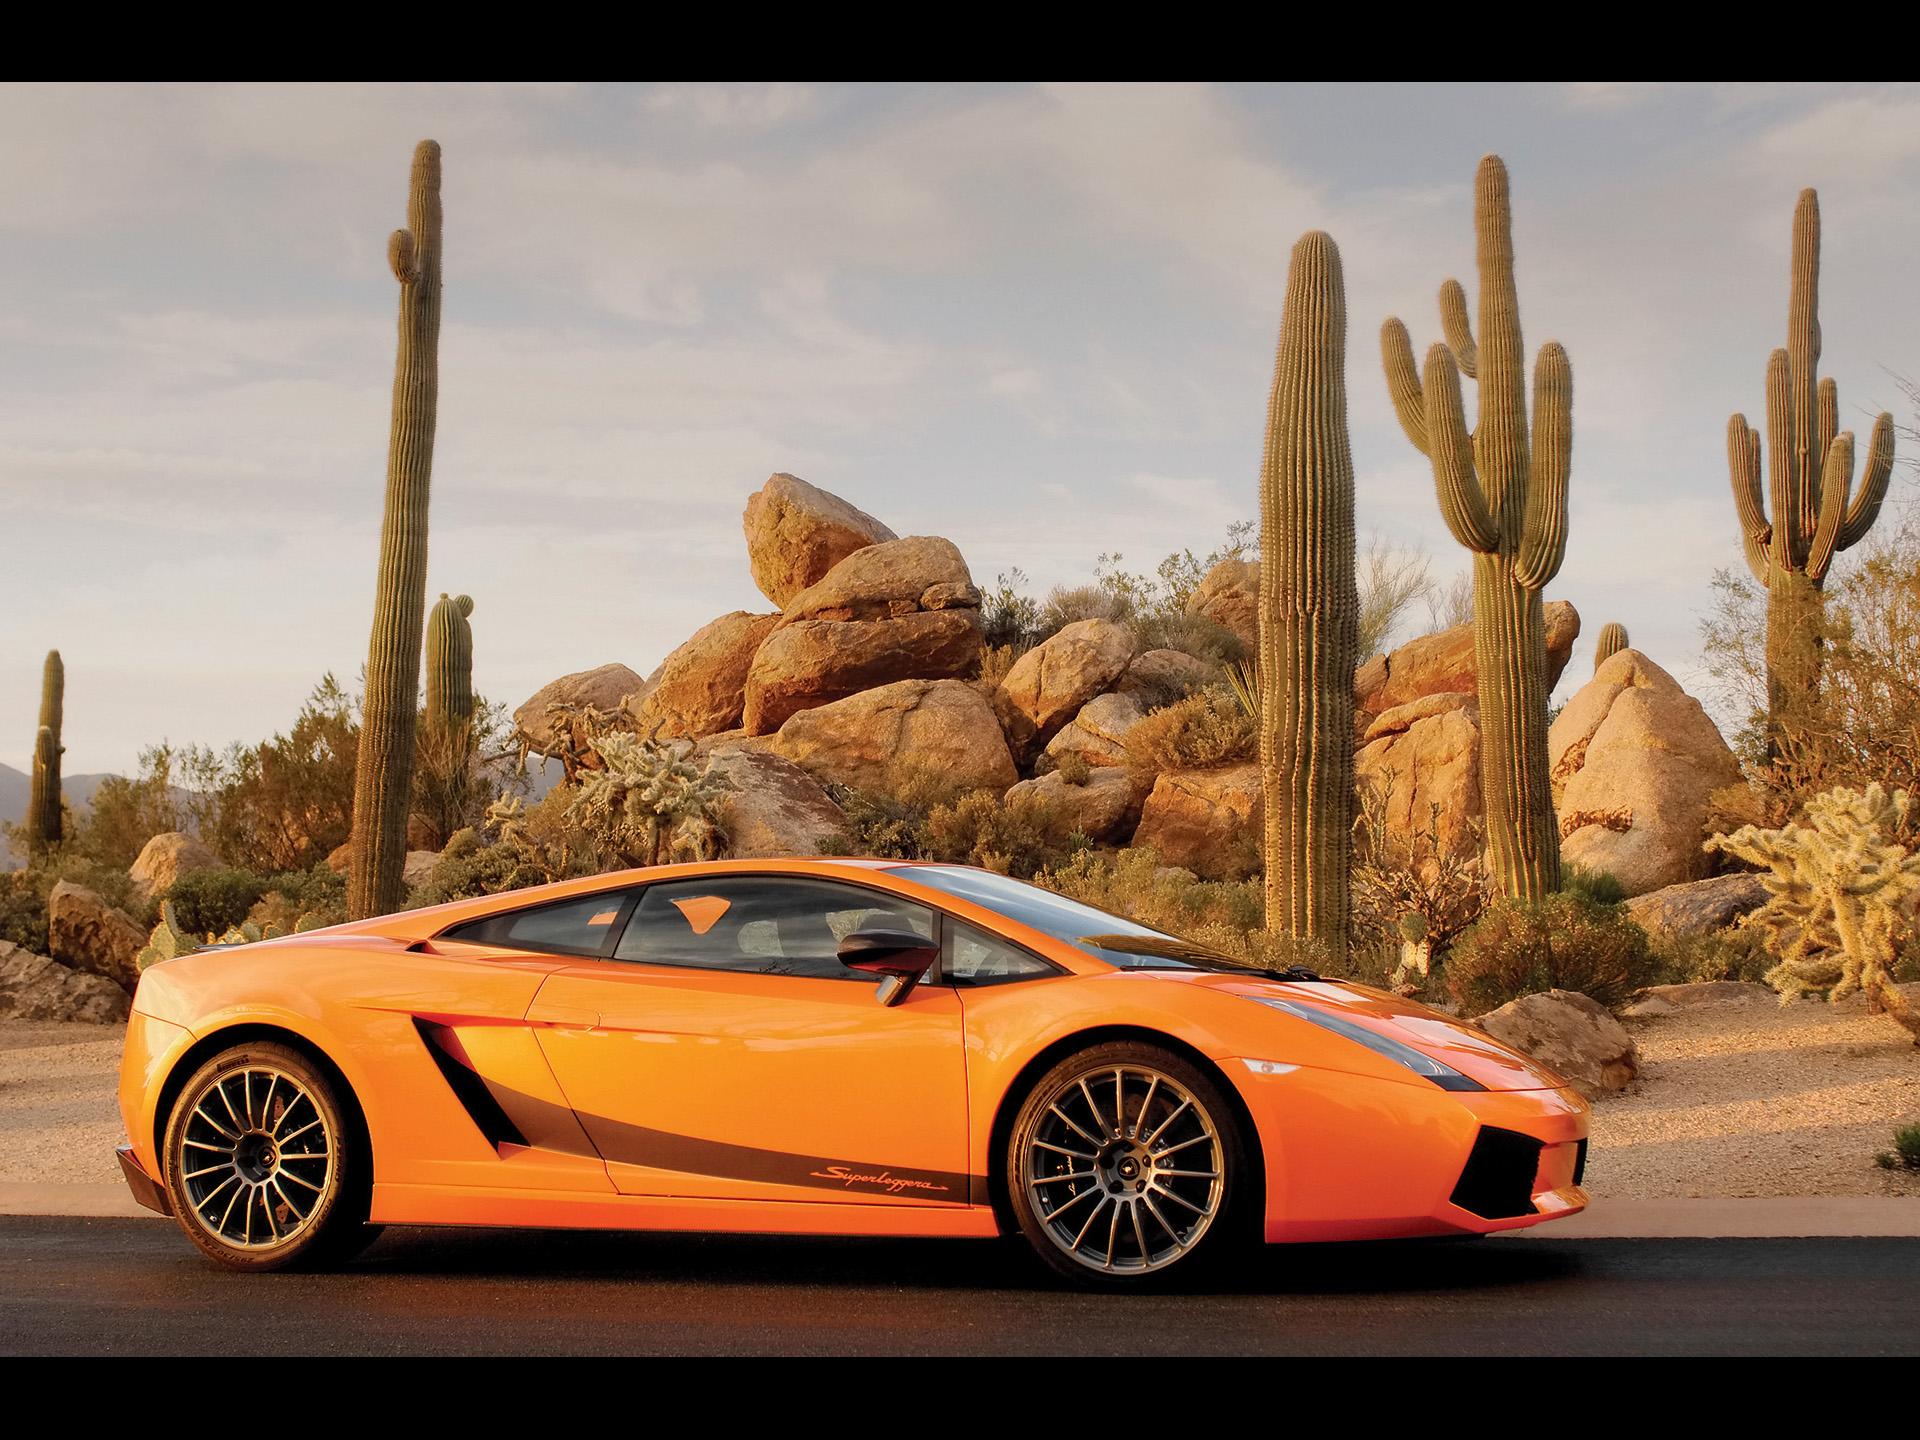 Download cars, Orange, Lamborghini, Cactus, Vehicles, Supercars ...